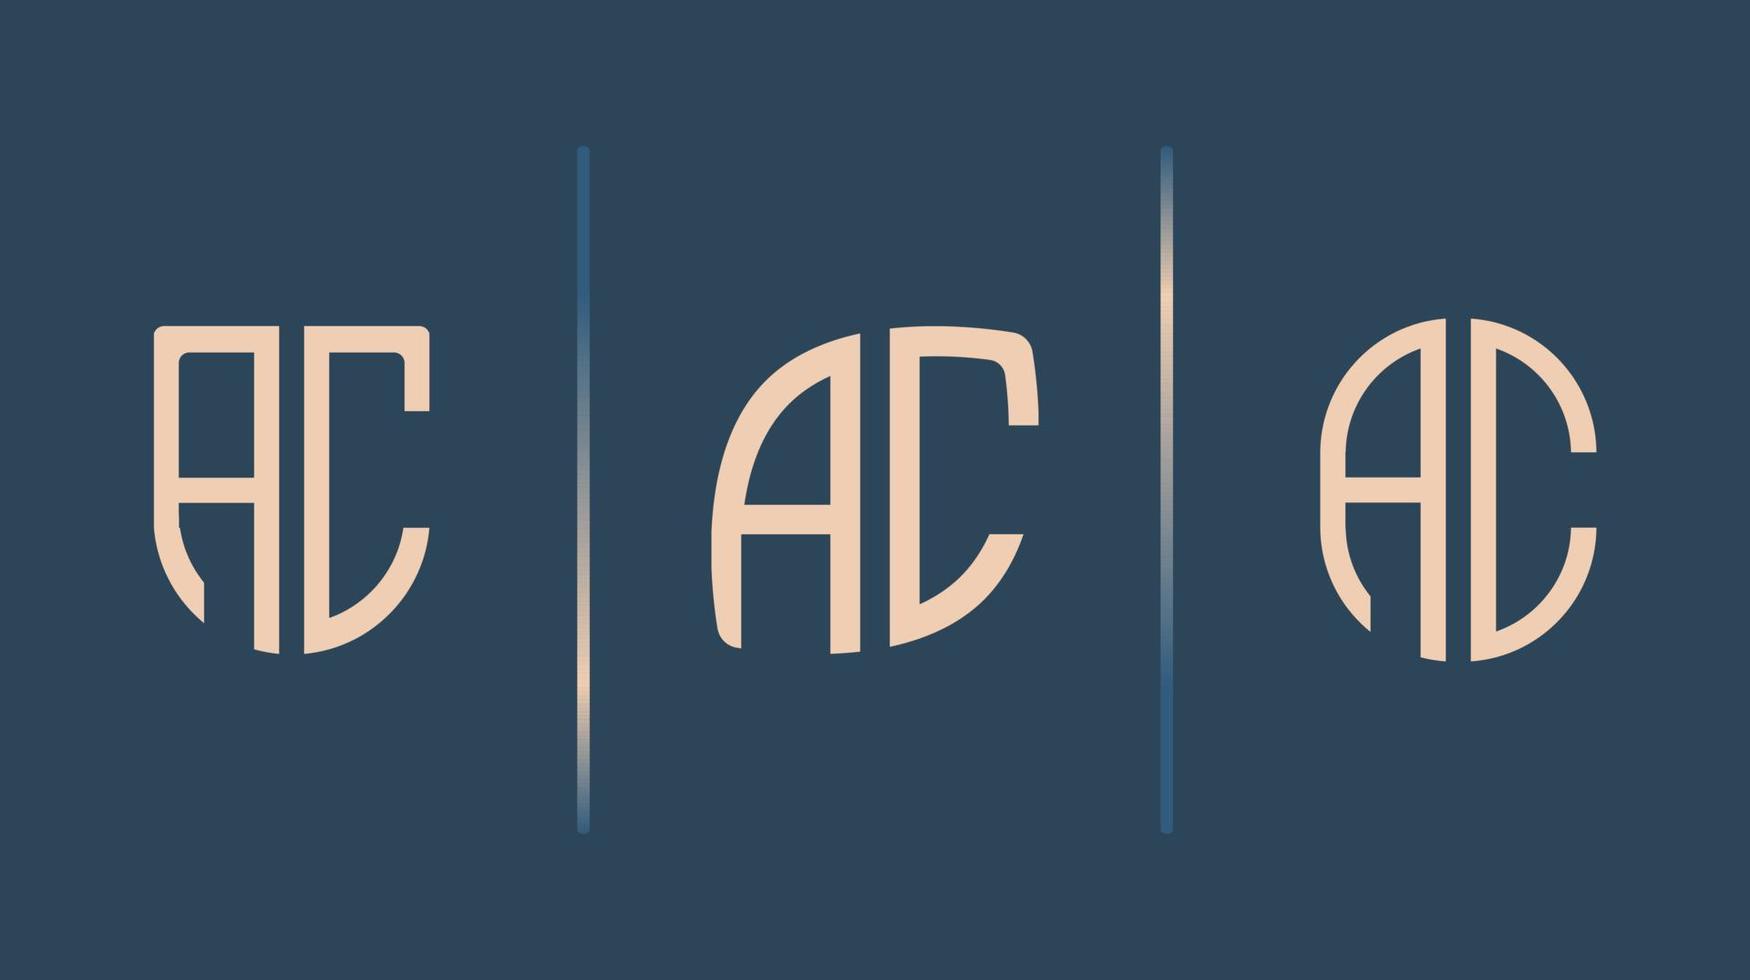 letras iniciais criativas pacote de designs de logotipo ac. vetor